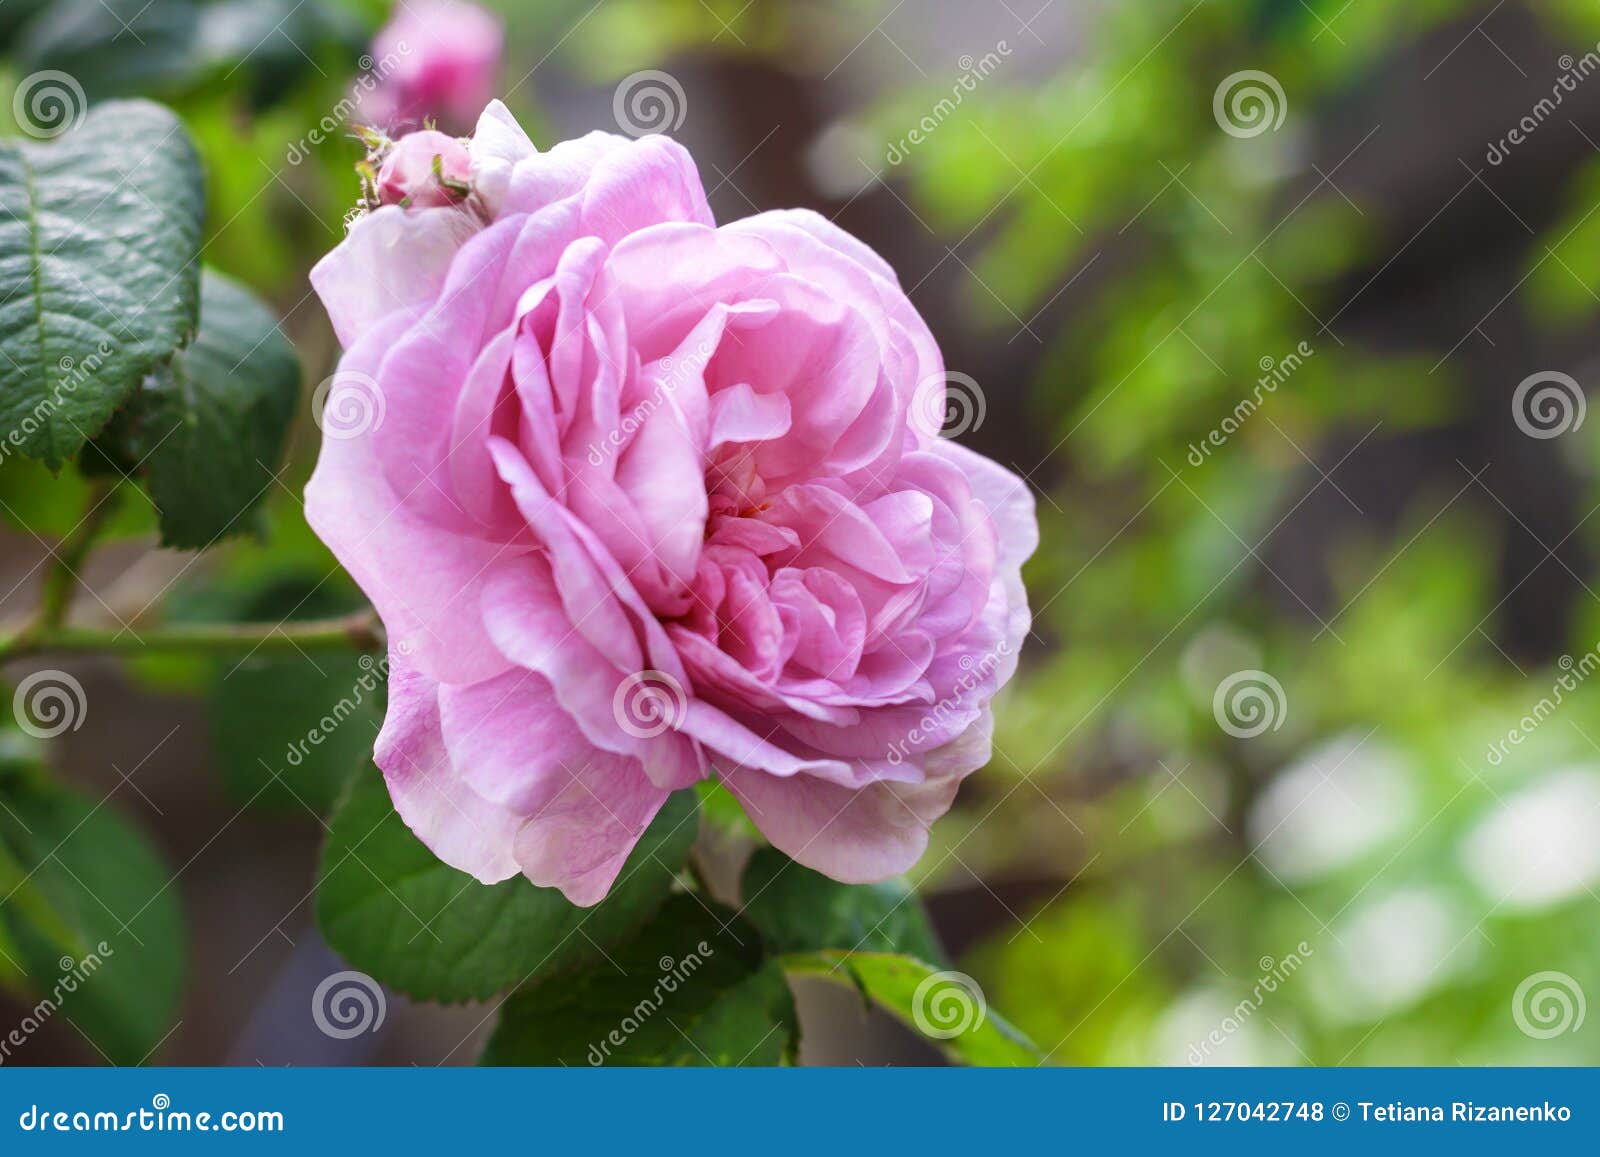 rosa centifolia rose des peintres flower closeup